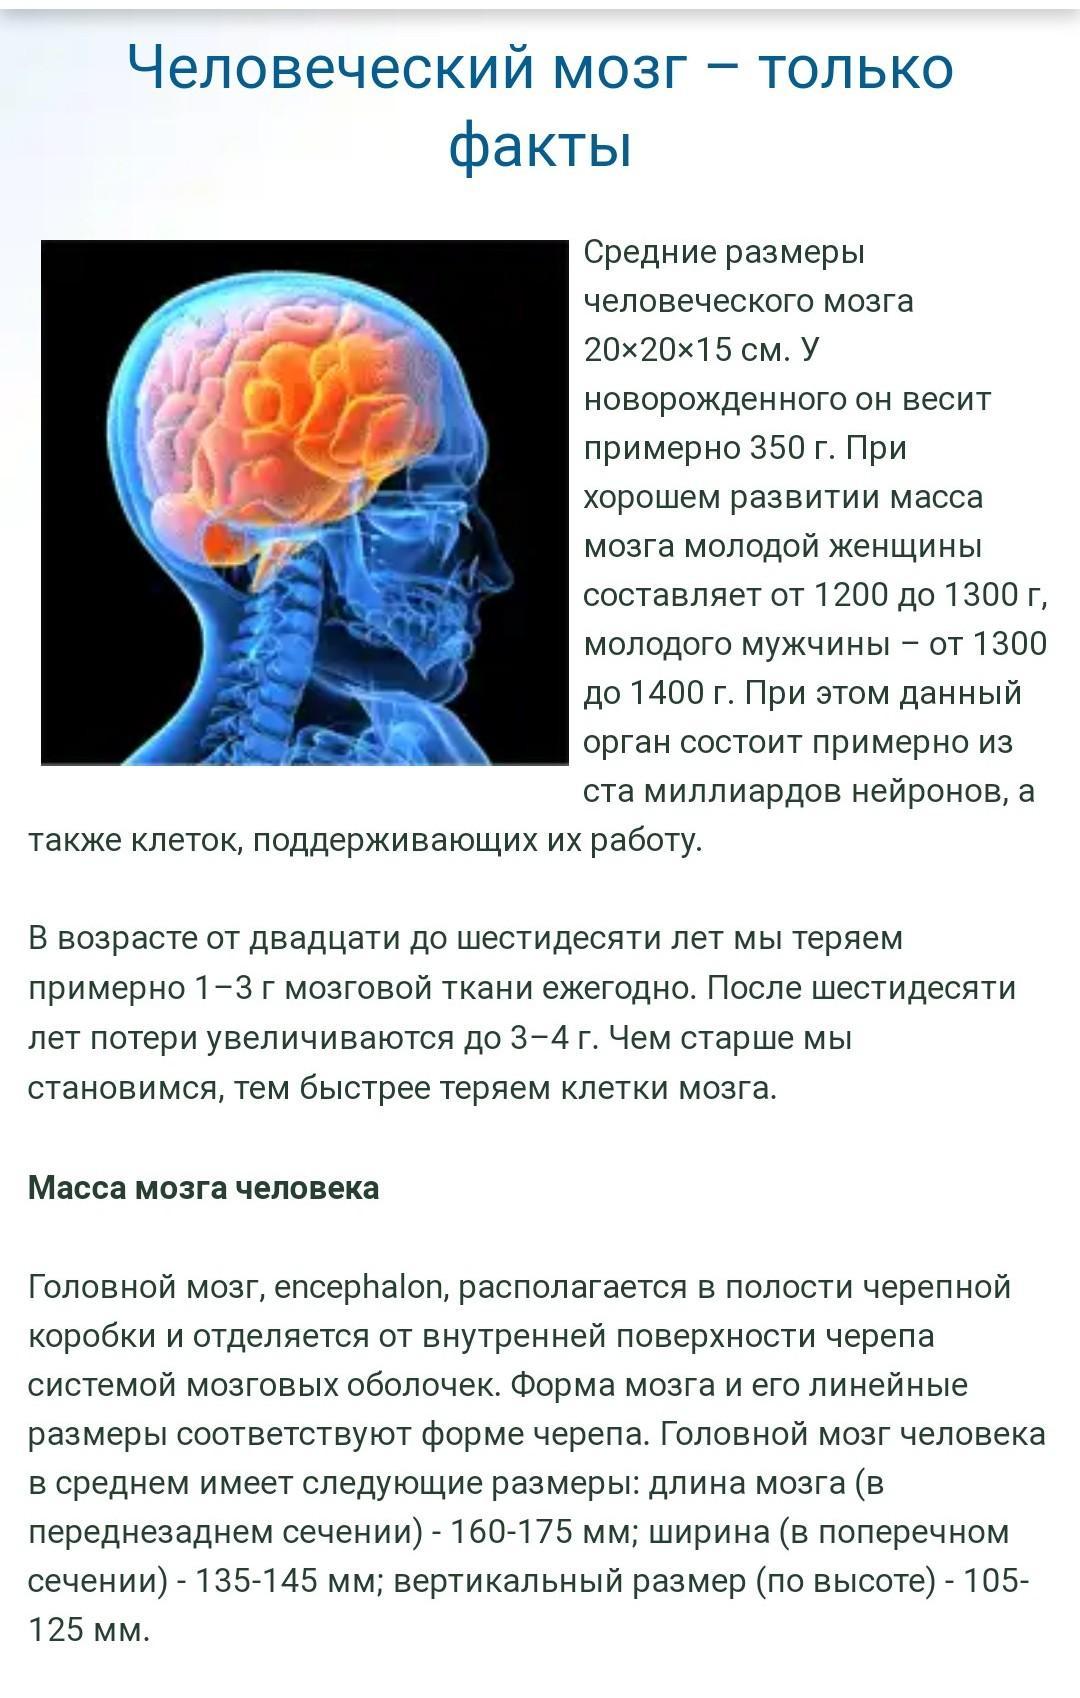 Объем головного мозга наибольшее. Об,ем мощга современного человека. Объем мозга современного человека. Масса мозга современного человека. Размер мозга.